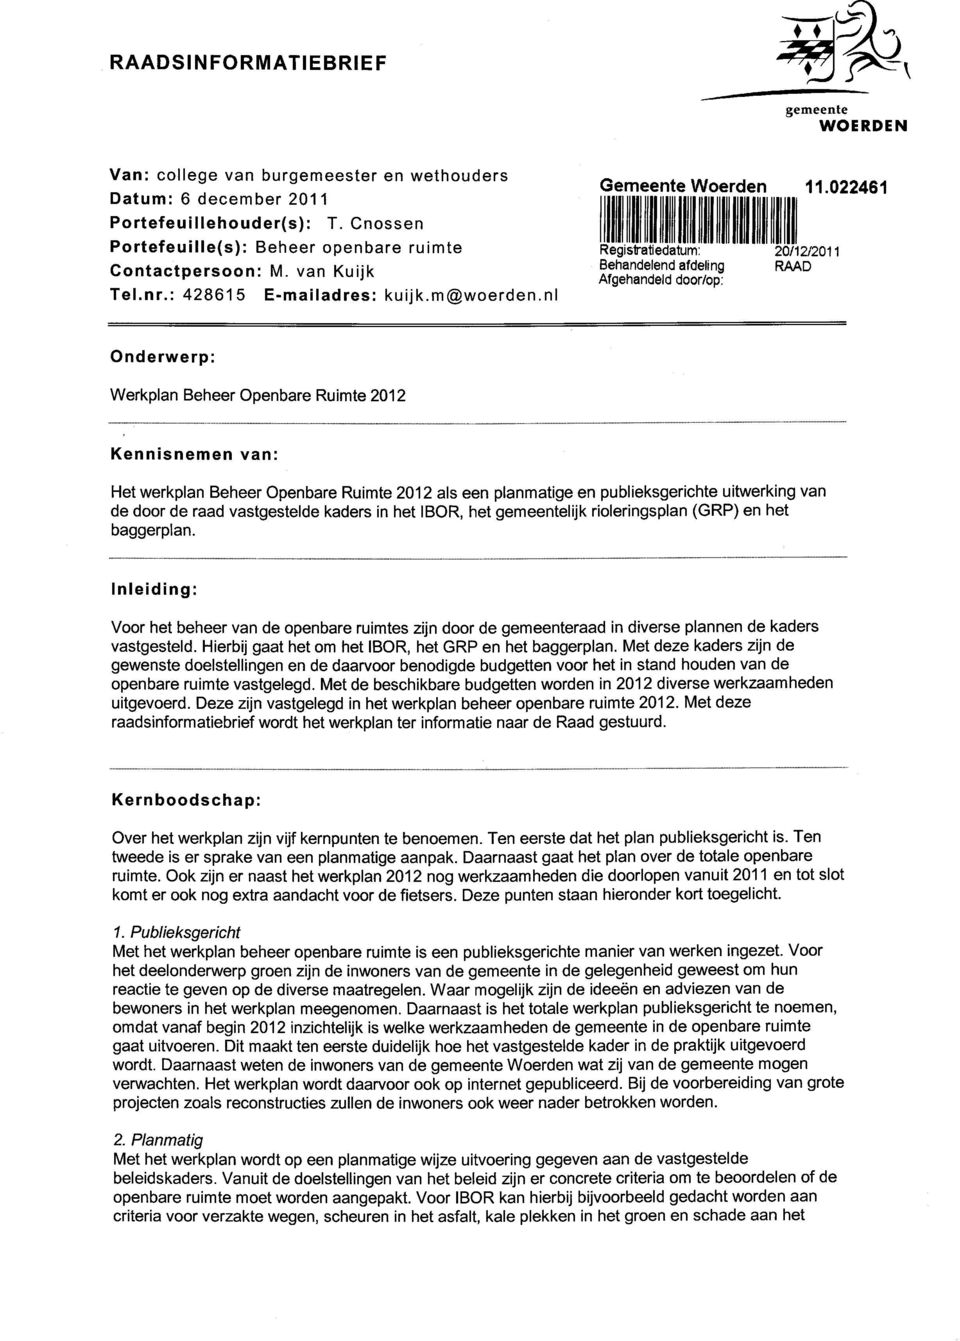 022461 Registratiedatum: Behandelend afdeling Afgehandeld door/op: 20/12/2011 RAAD Onderwerp: Werkplan Beheer Openbare Ruimte 2012 Kennisnemen van: Het werkplan Beheer Openbare Ruimte 2012 als een